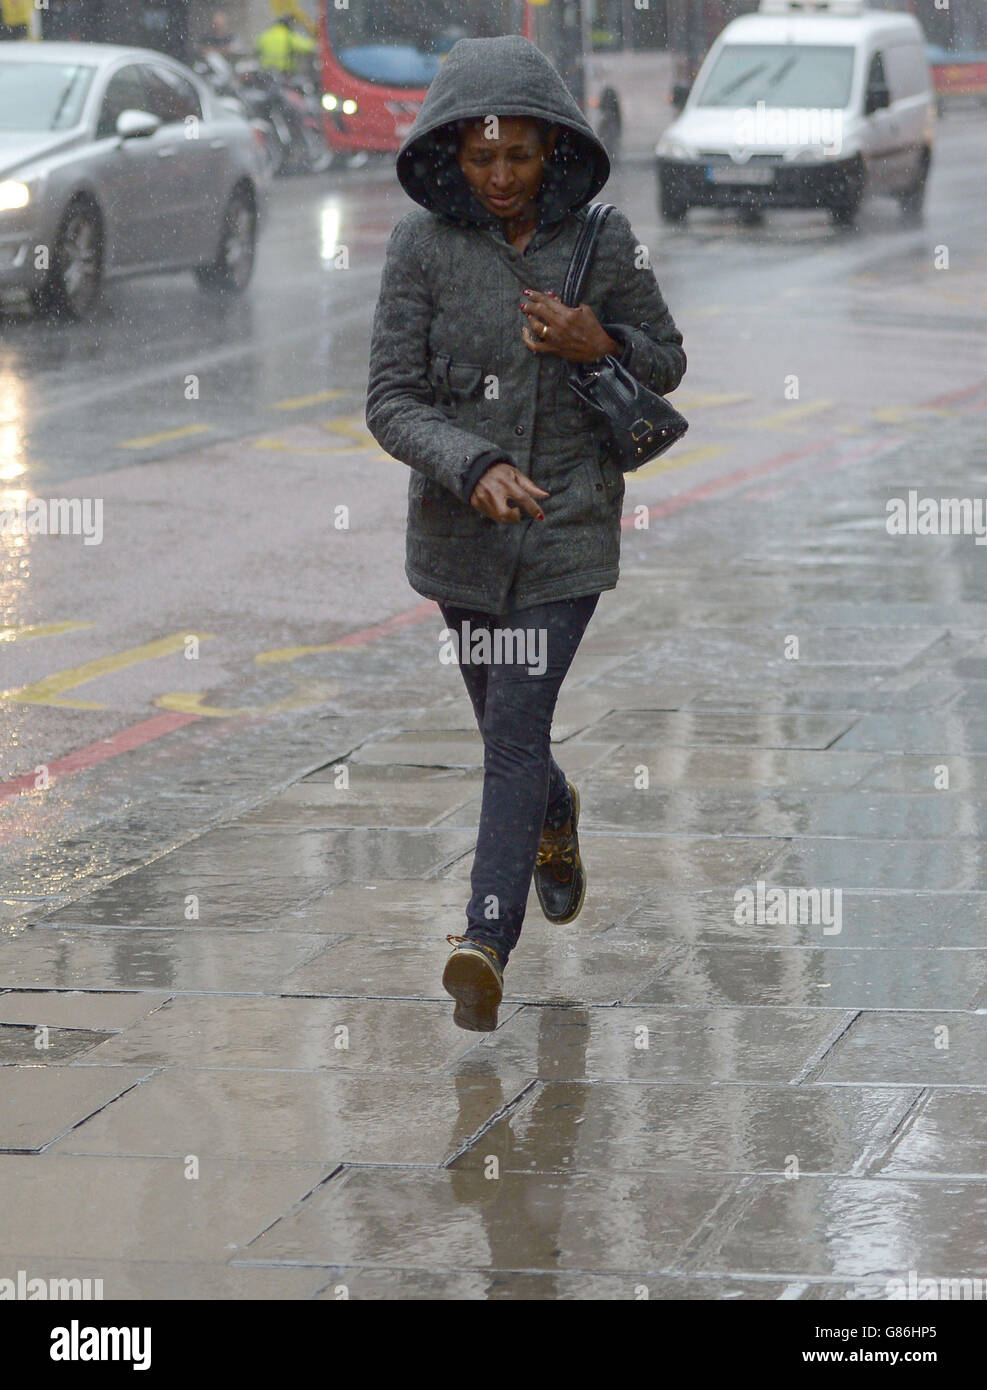 Im Zentrum von London geraten die Bürger in heftigen Regen. Stockfoto